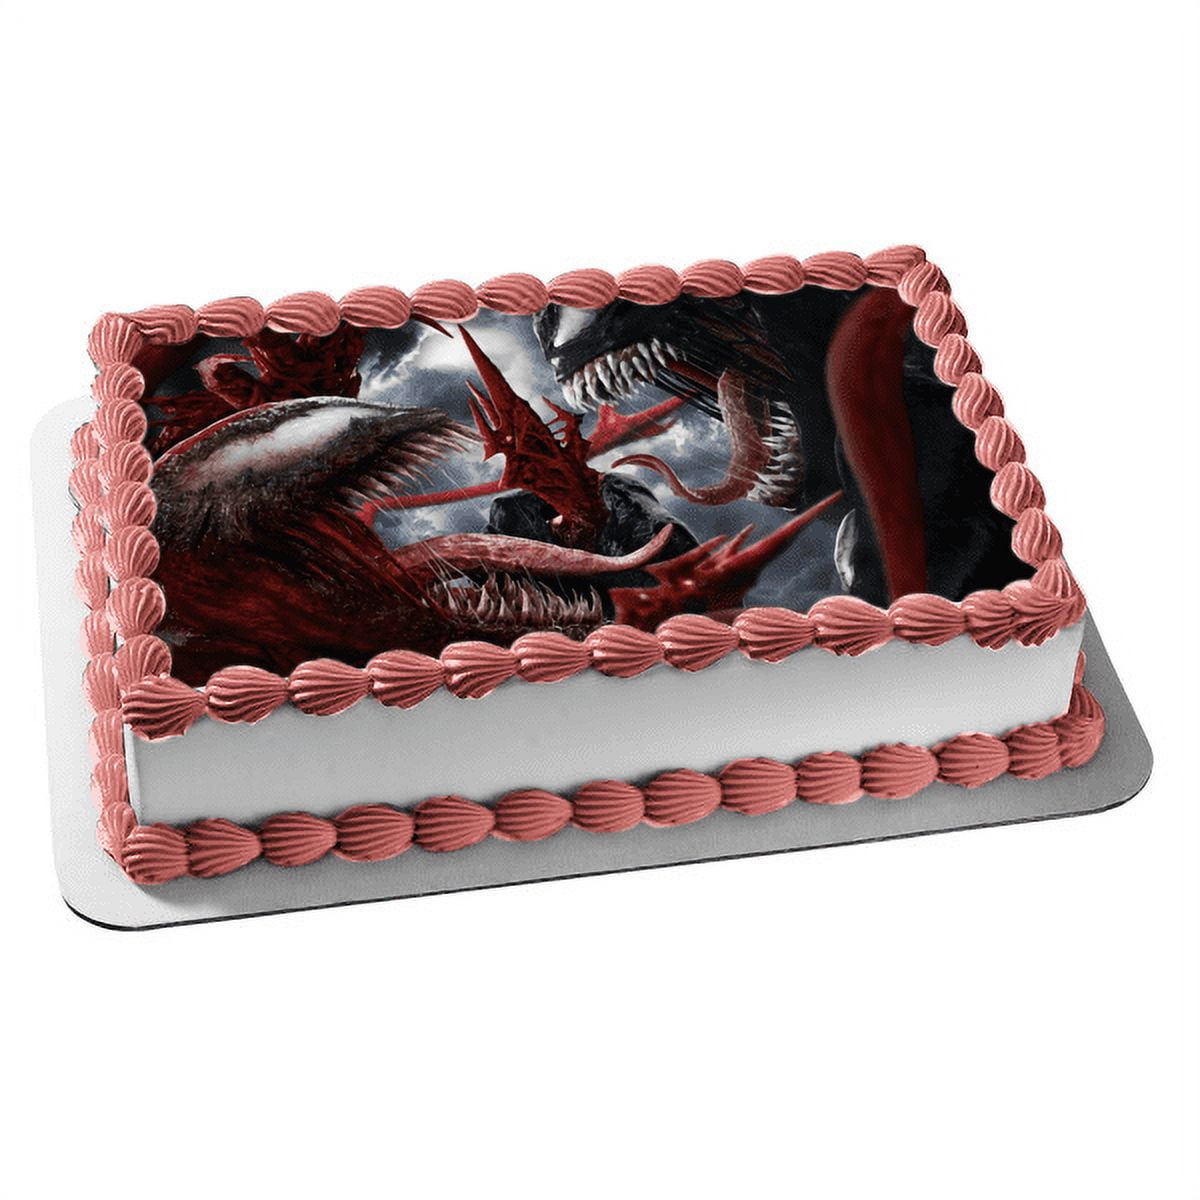 Venom Cake | MyBakeStudio